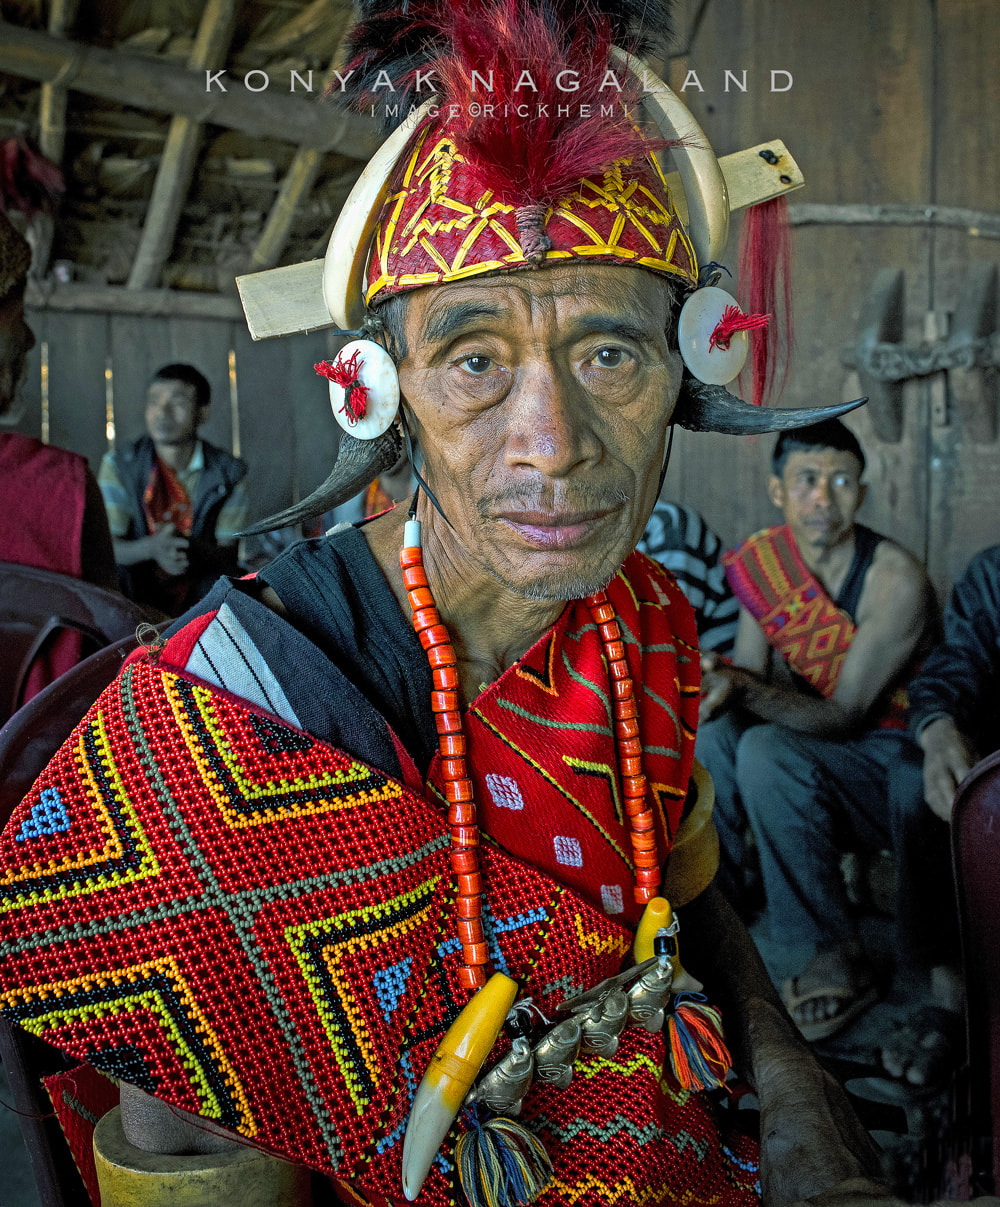 overland travel India, konyak portrait Nagaland, image by Rick Hemi